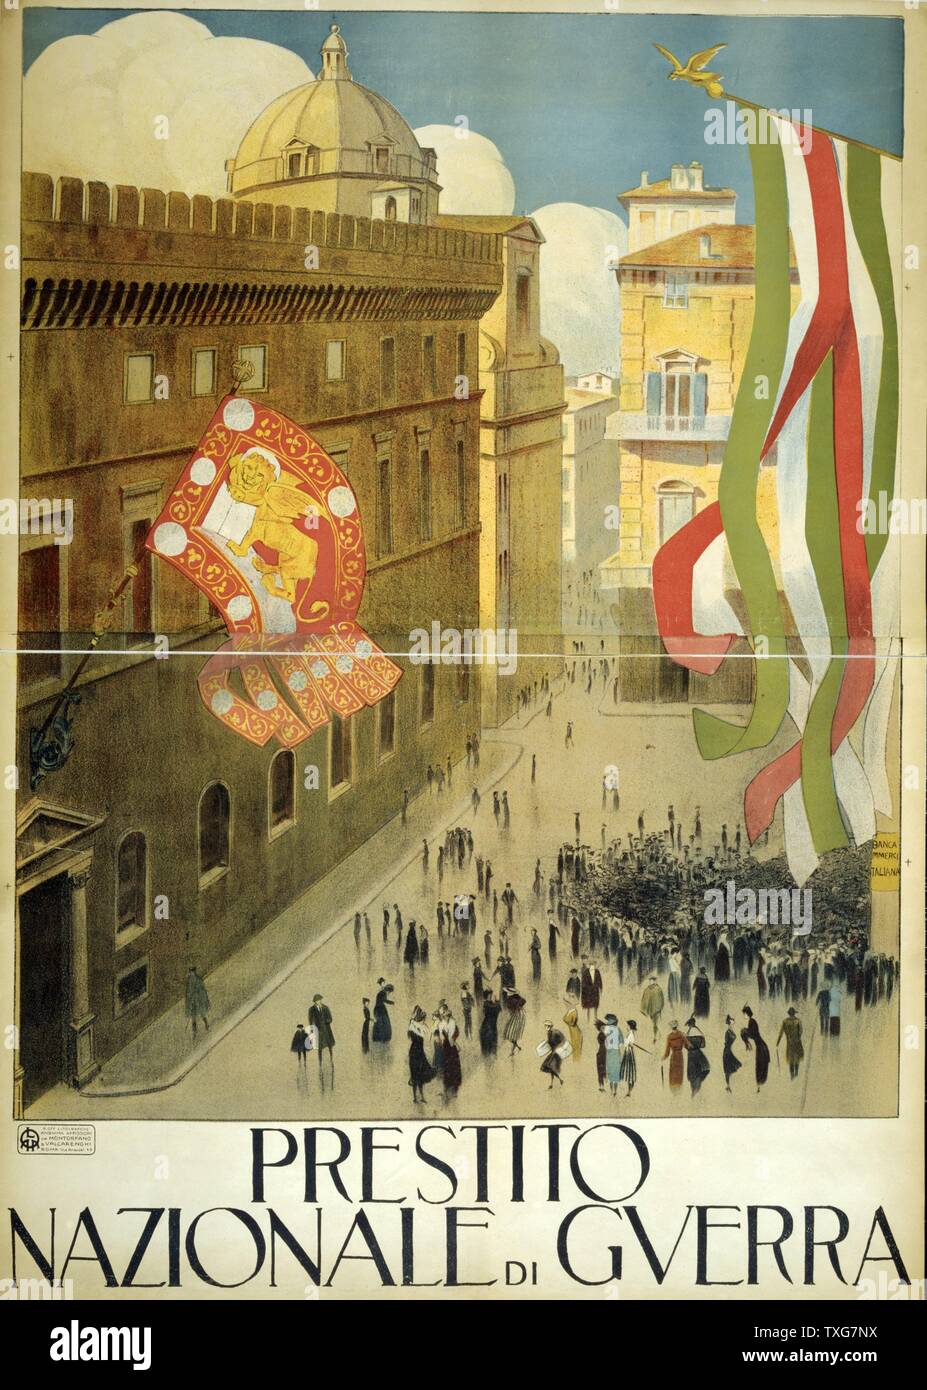 La guerra mondiale I Poster per la Nazionale Italiana di prestito di guerra che mostra la folla al di fuori della Banca nazionale Foto Stock